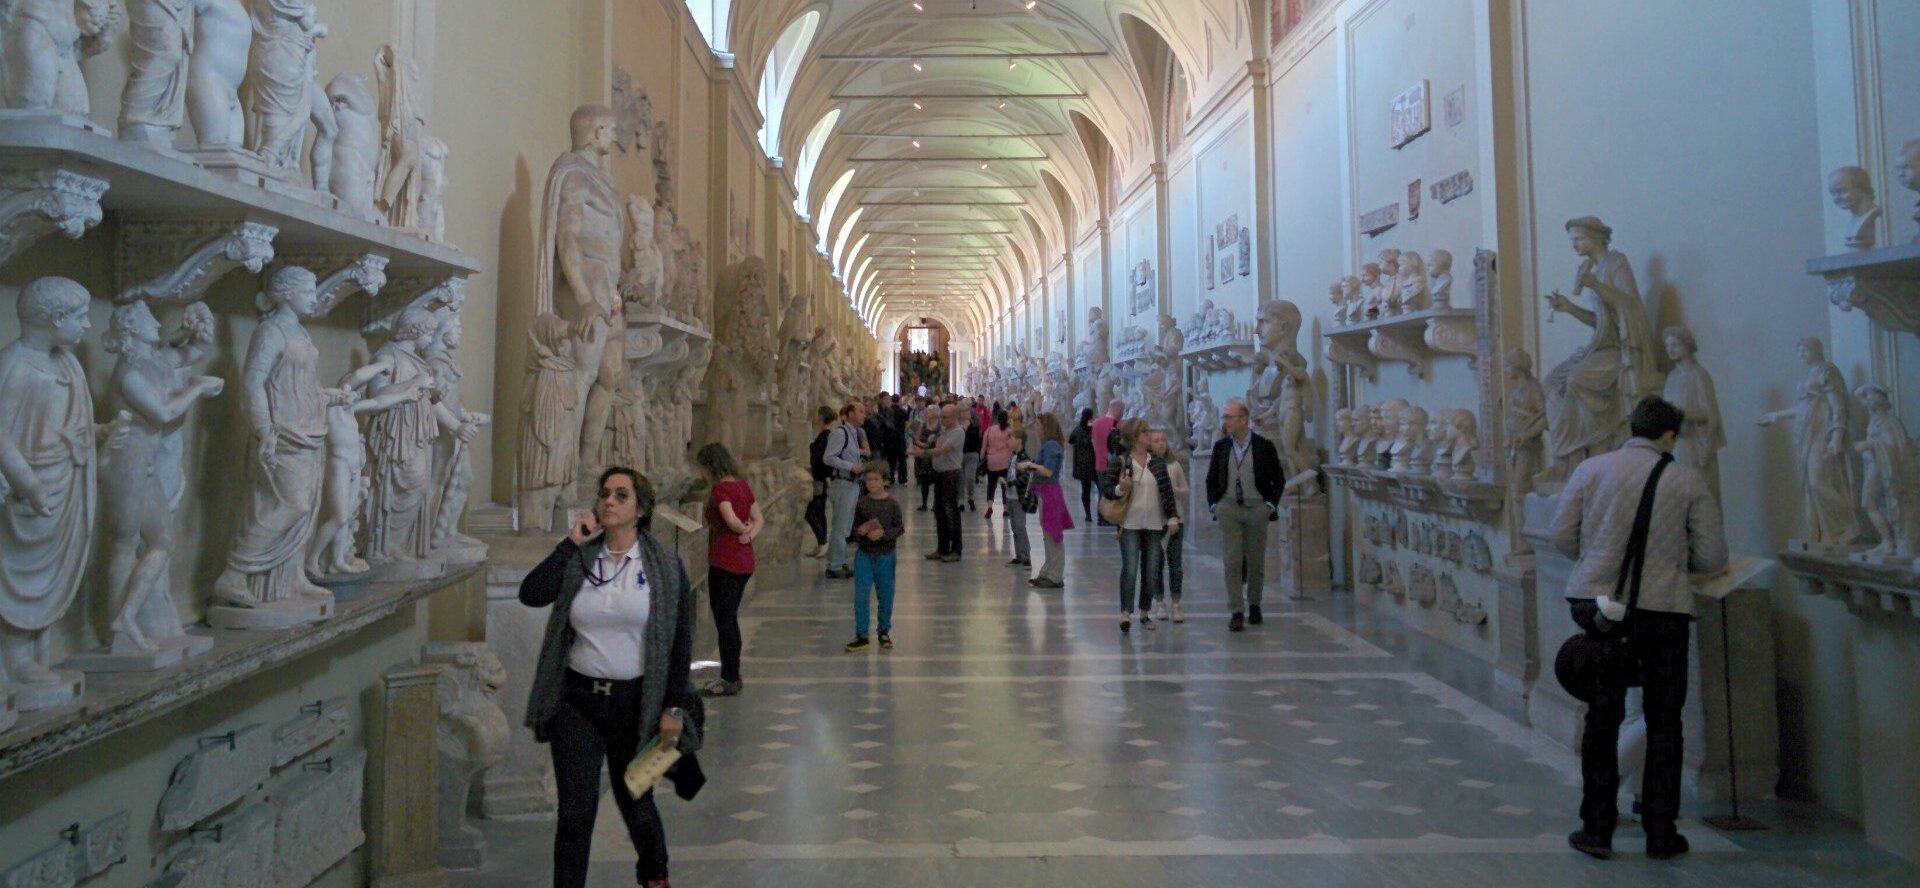 La reproduction des oeuvres exposées aux Musées du Vatican sont soumises à des droits d'auteurs | © Mario Sanchez Prada/Flickr/CC BY-SA 2.0